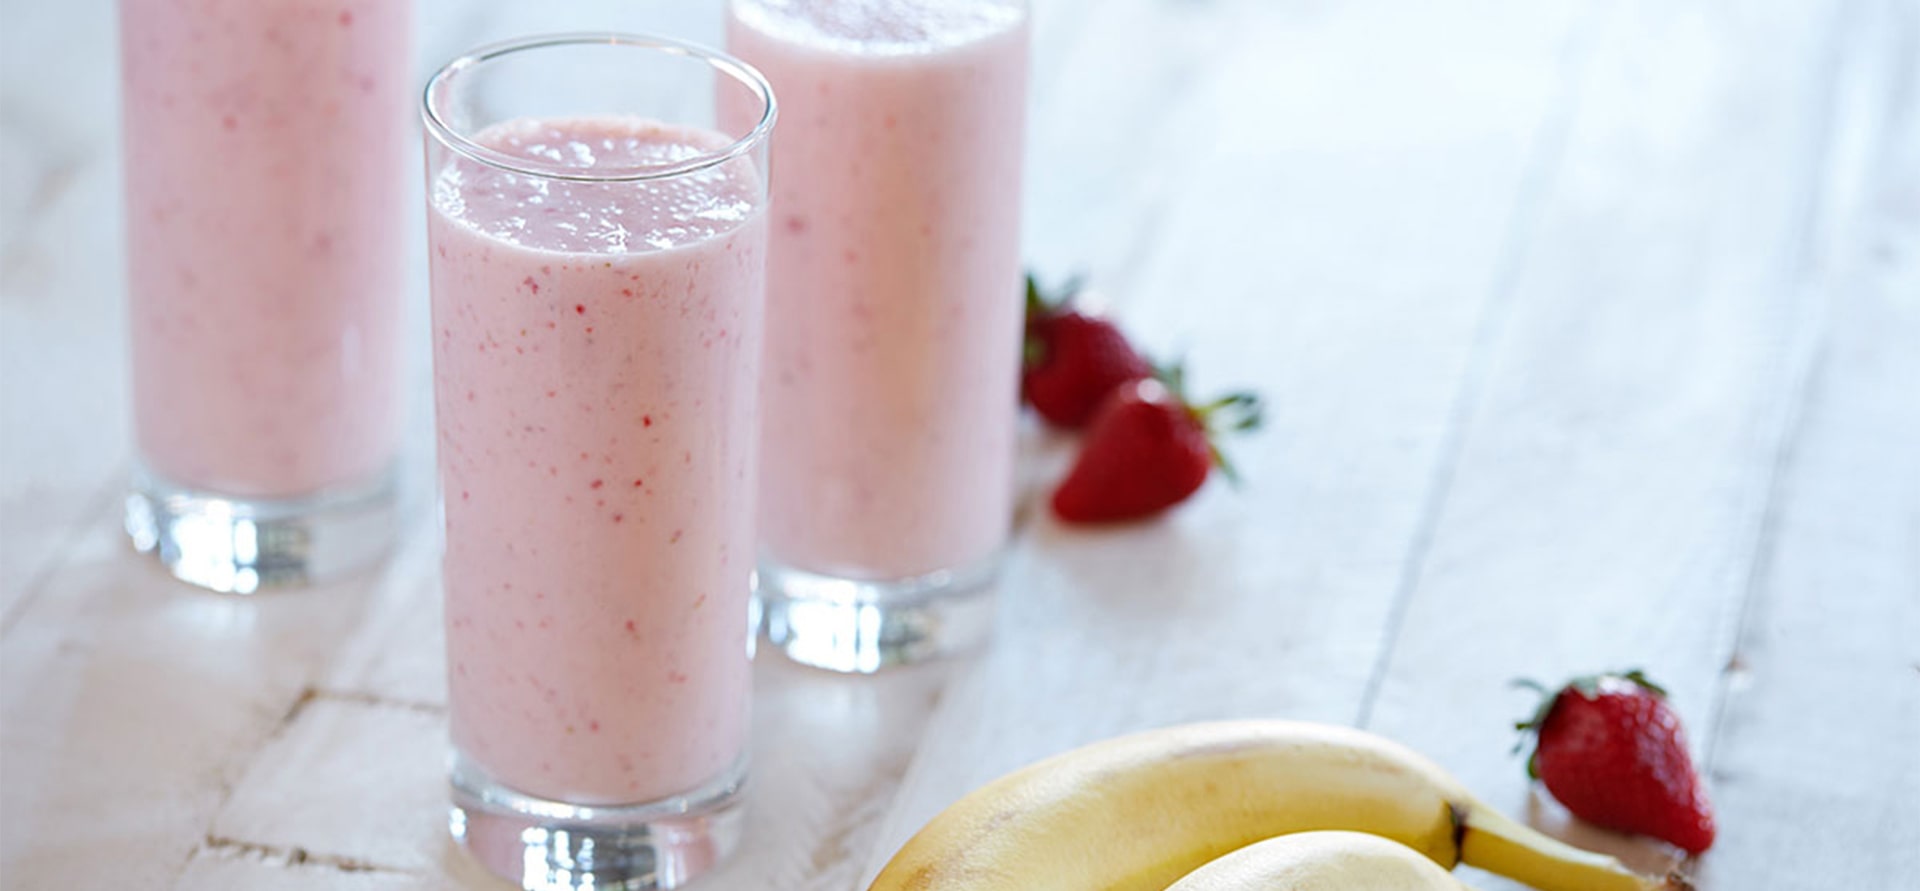 Strawberry  Banana Smoothie Dannon Yogurt Recipe